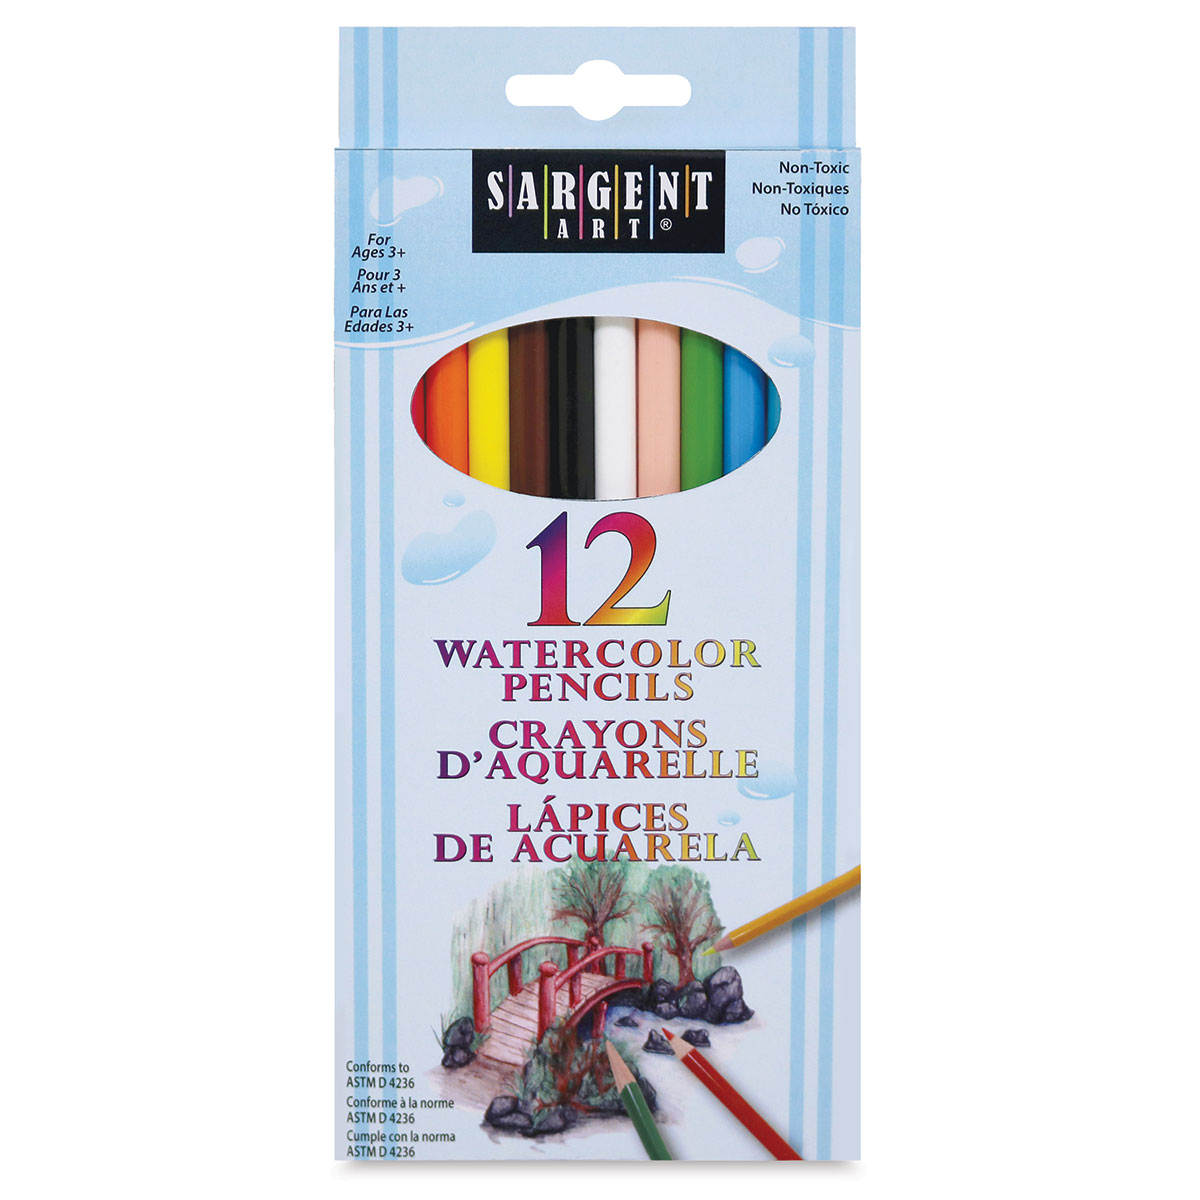 Sargent Art Watercolor Pencil Set - Assorted Colors, Set Of 12 | Blick Art Materials